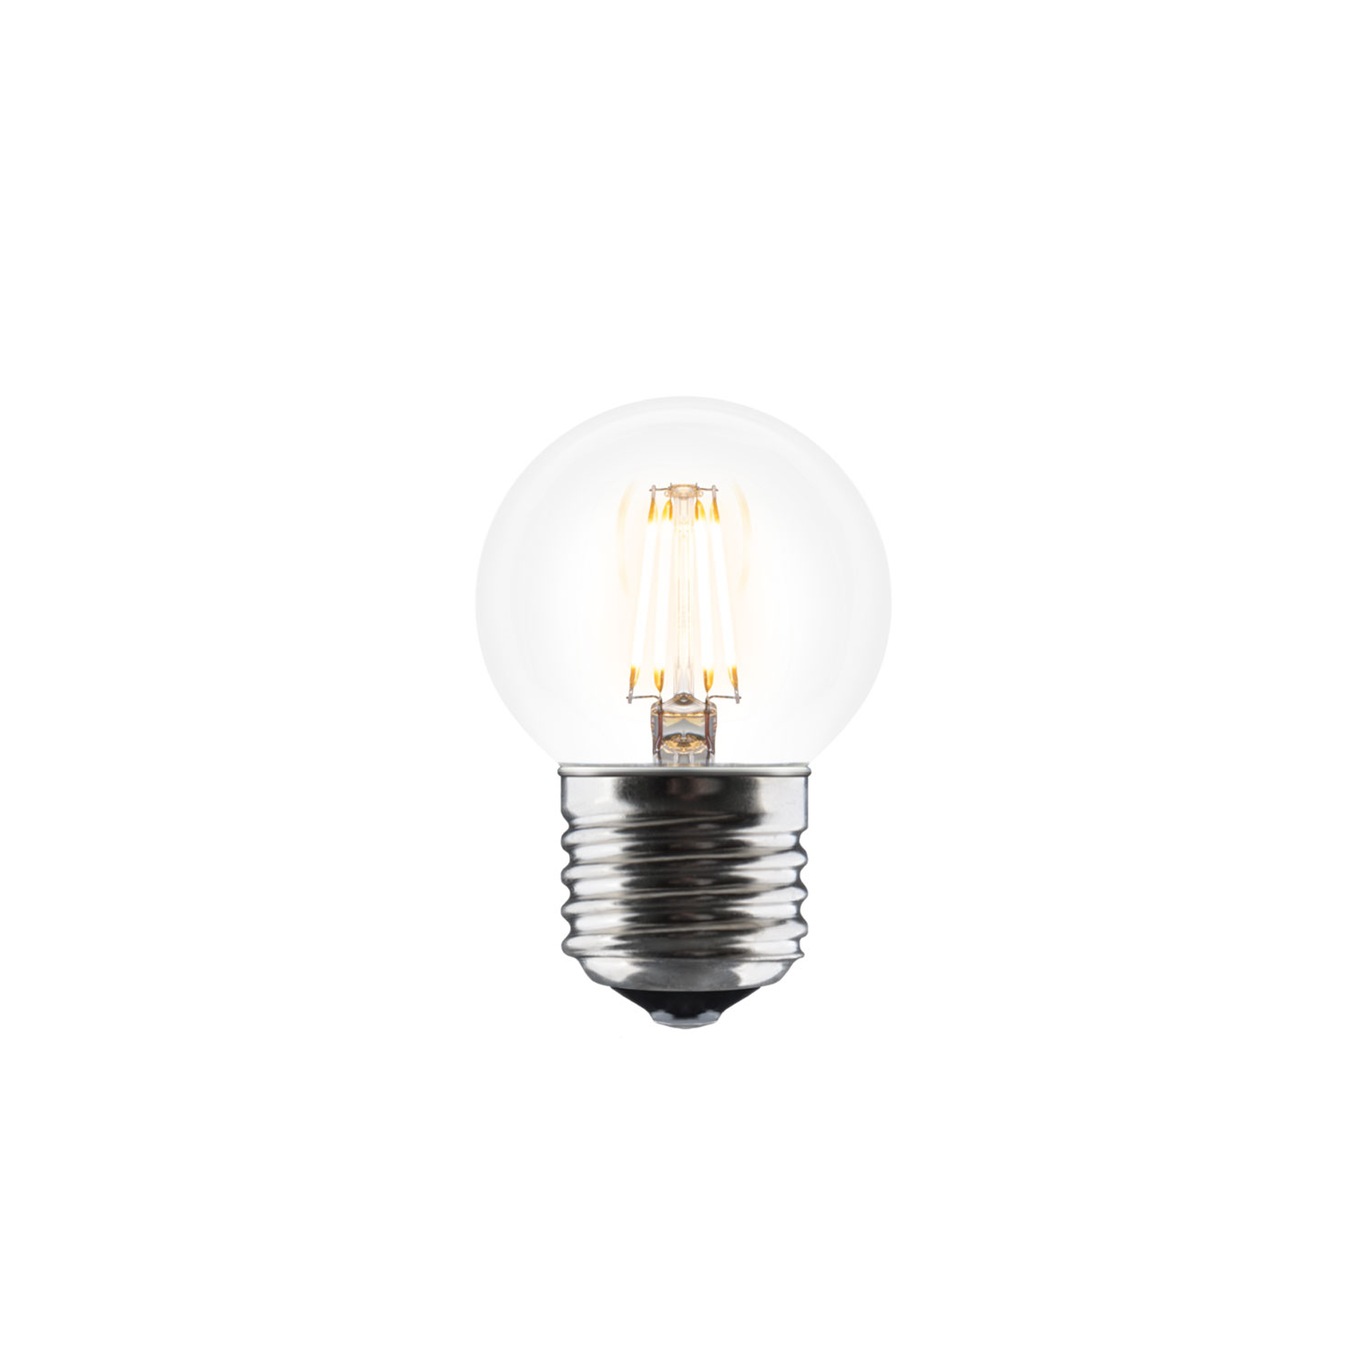 Idea Bulb E27 LED 4W, 40 mm